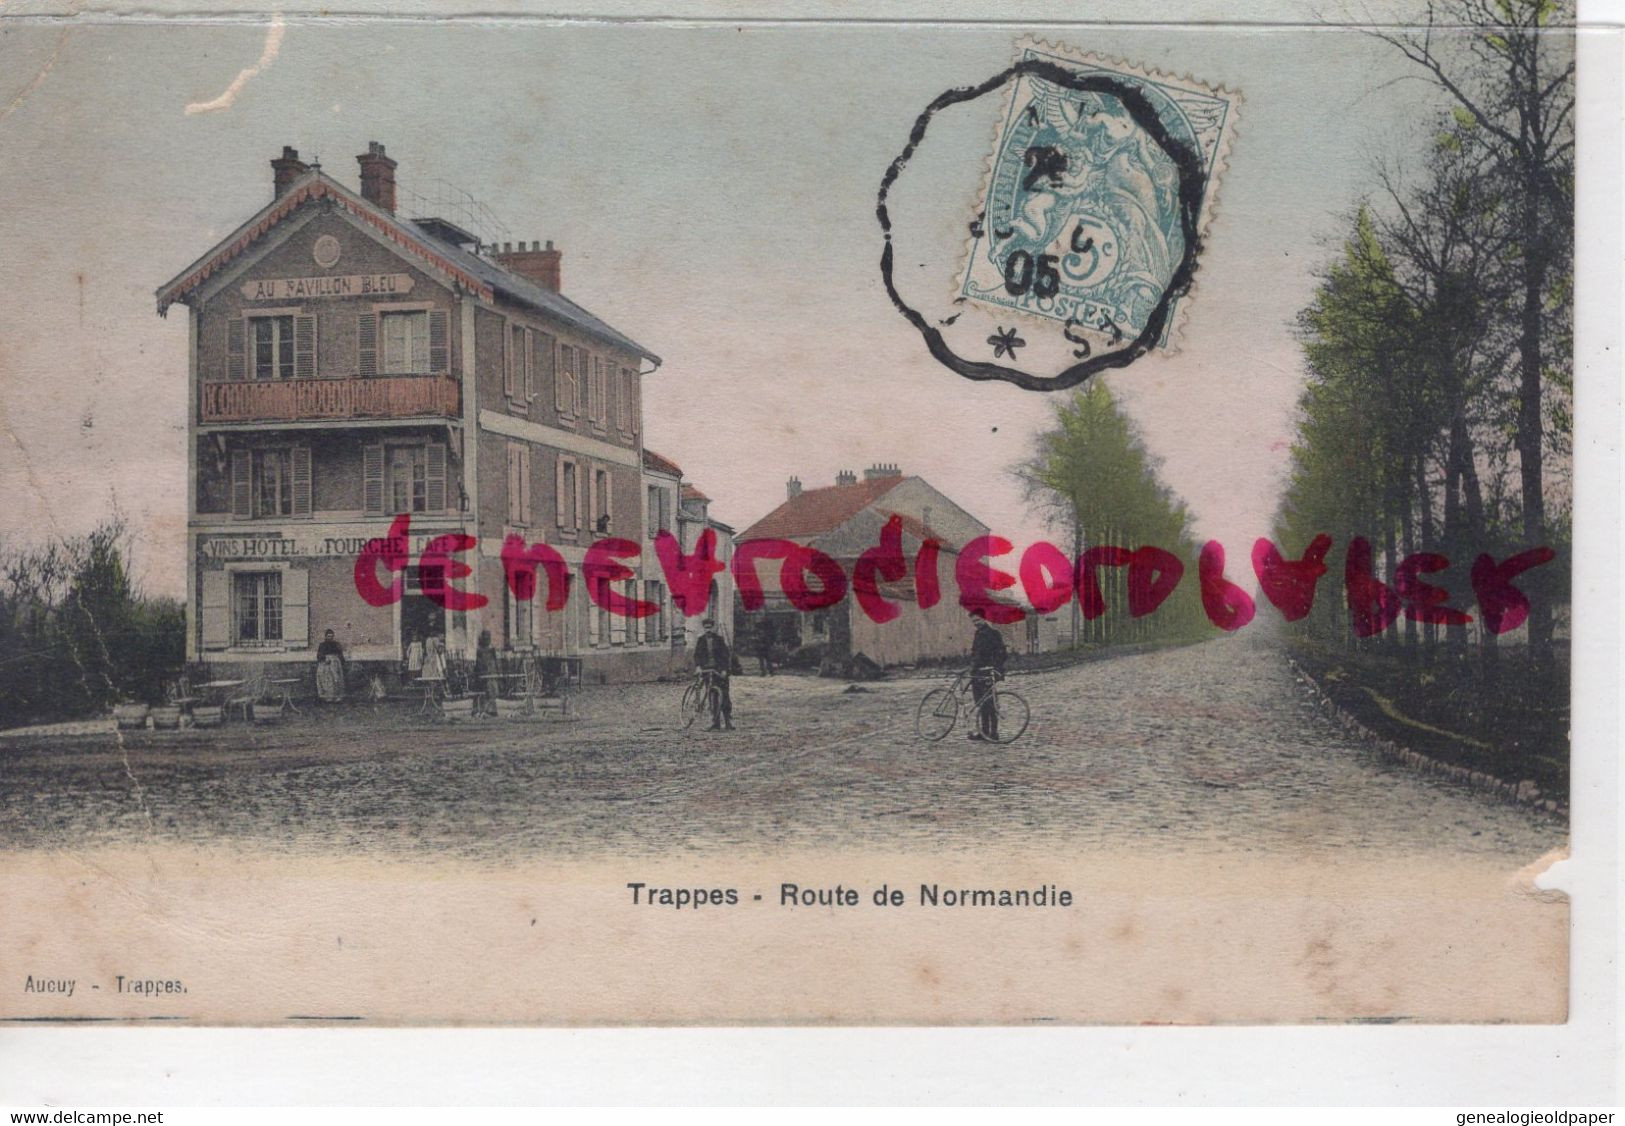 78 -  TRAPPES - ROUTE DE NORMANDIE - AU PAVILLON BLEU  HOTEL DE LA FOURCHE- EDITEUR AUCUY  1905  CARTE COLORISEE - Trappes